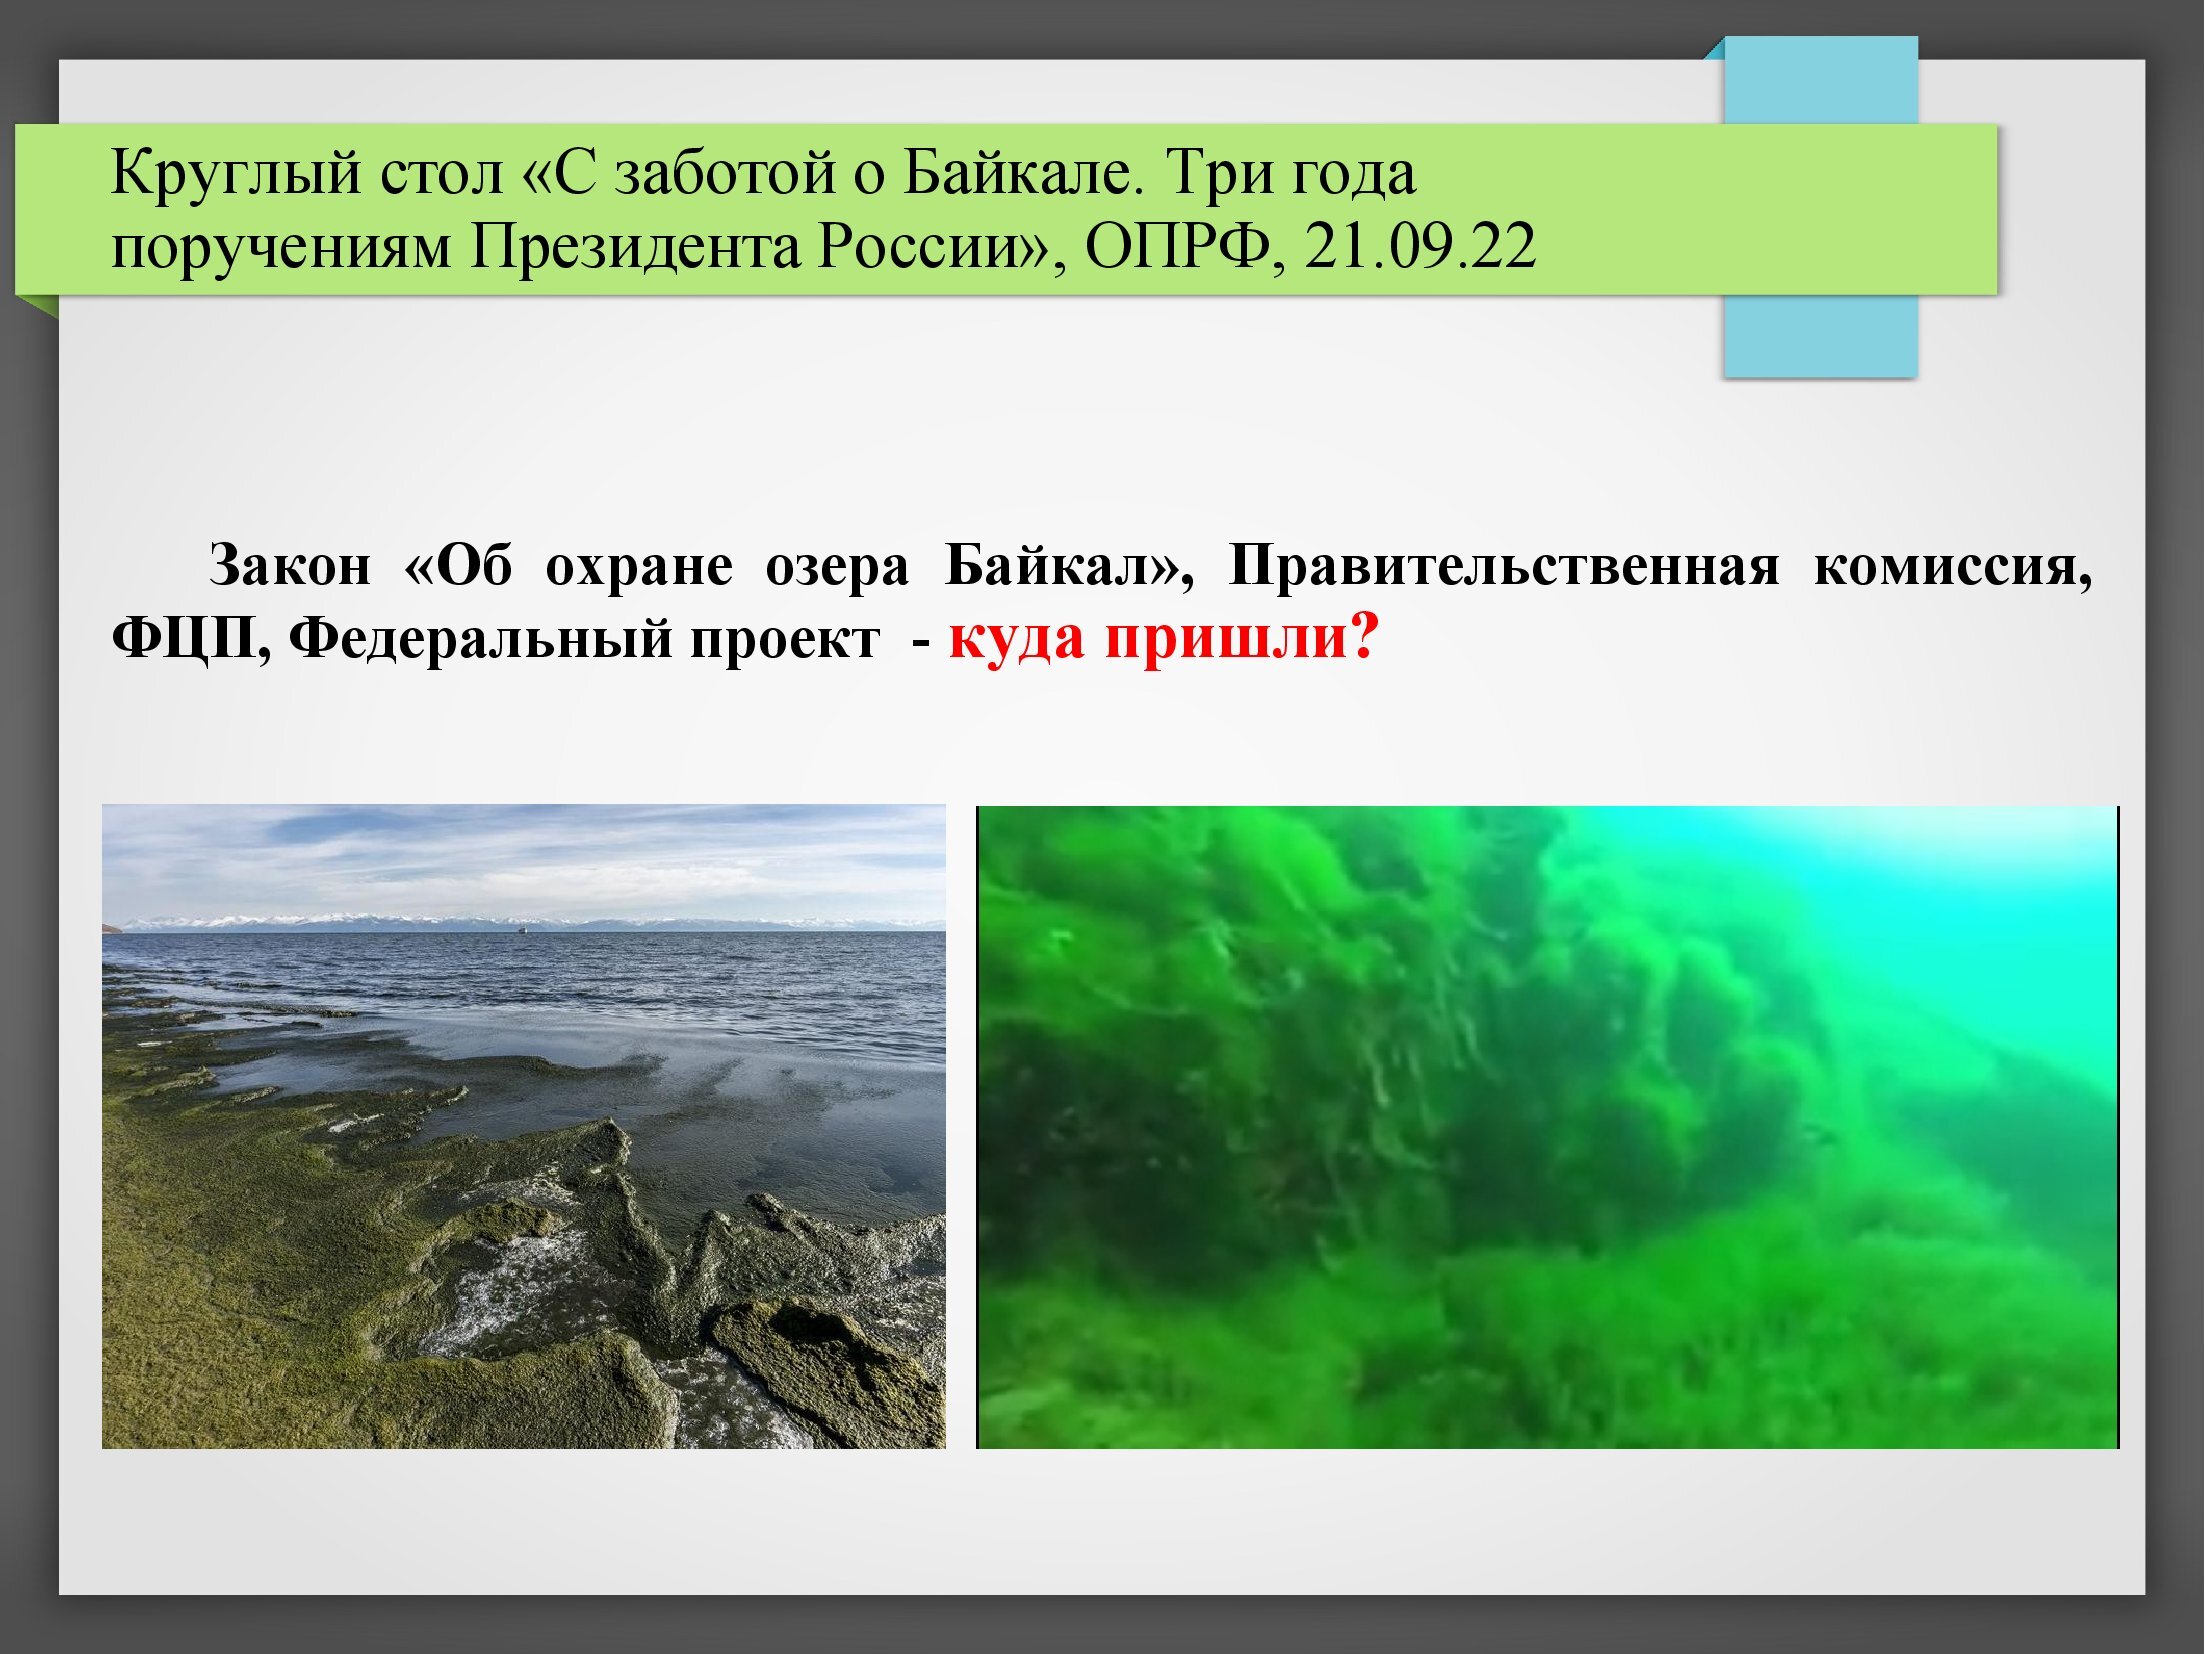 Байкал — национальное природное достояние и задачи по его сохранению (мнение) - фото 4